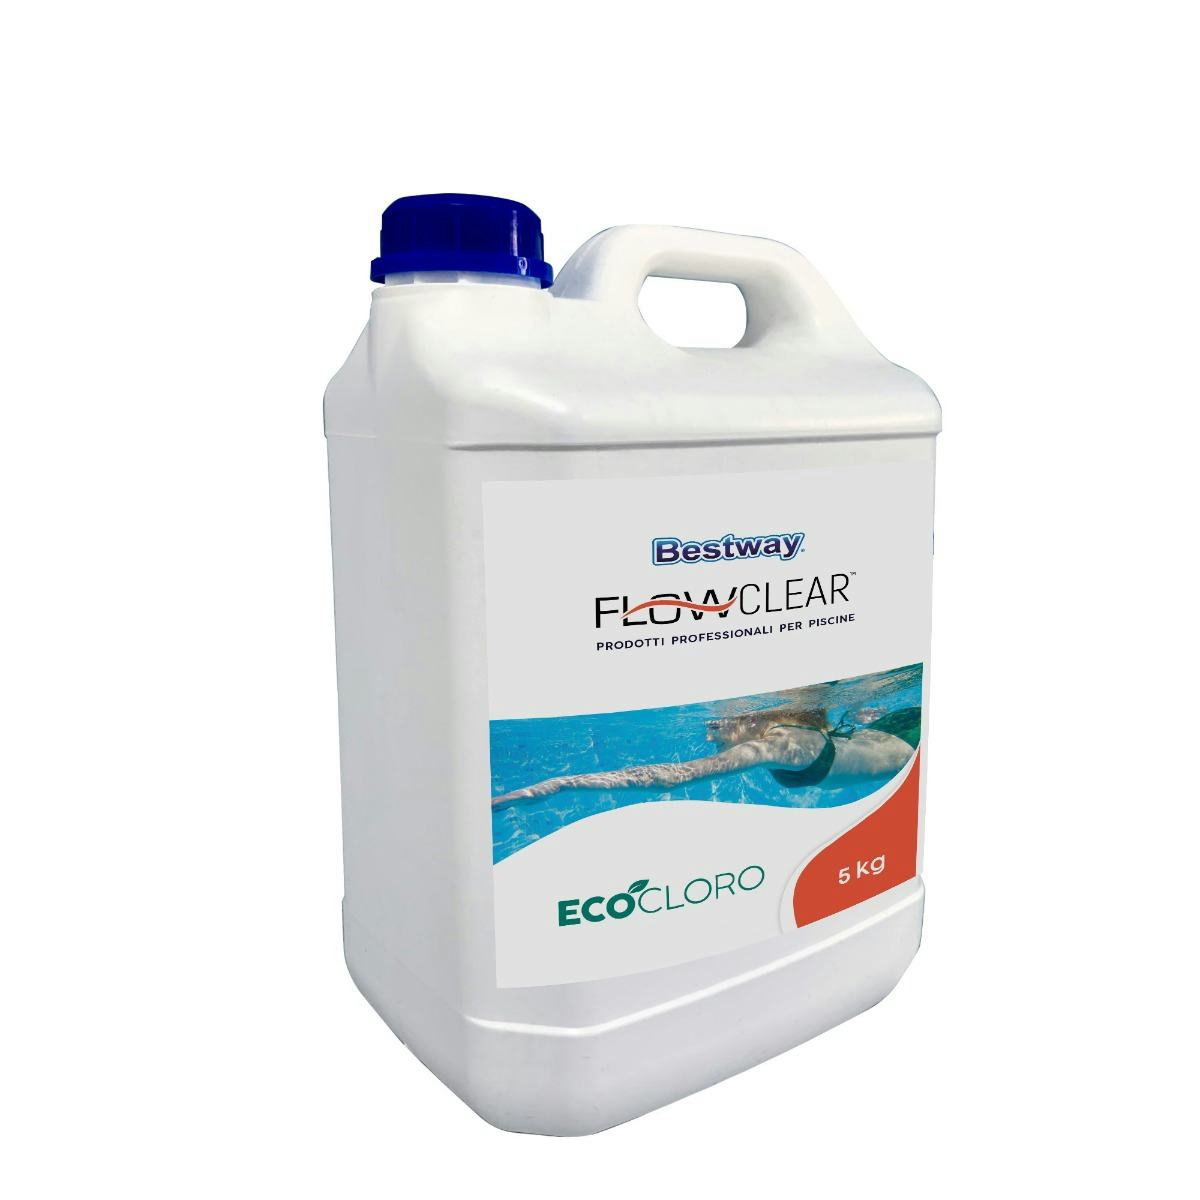 Trattamento chimico dell'acqua Eco-cloro da 5 kg Bestway 1